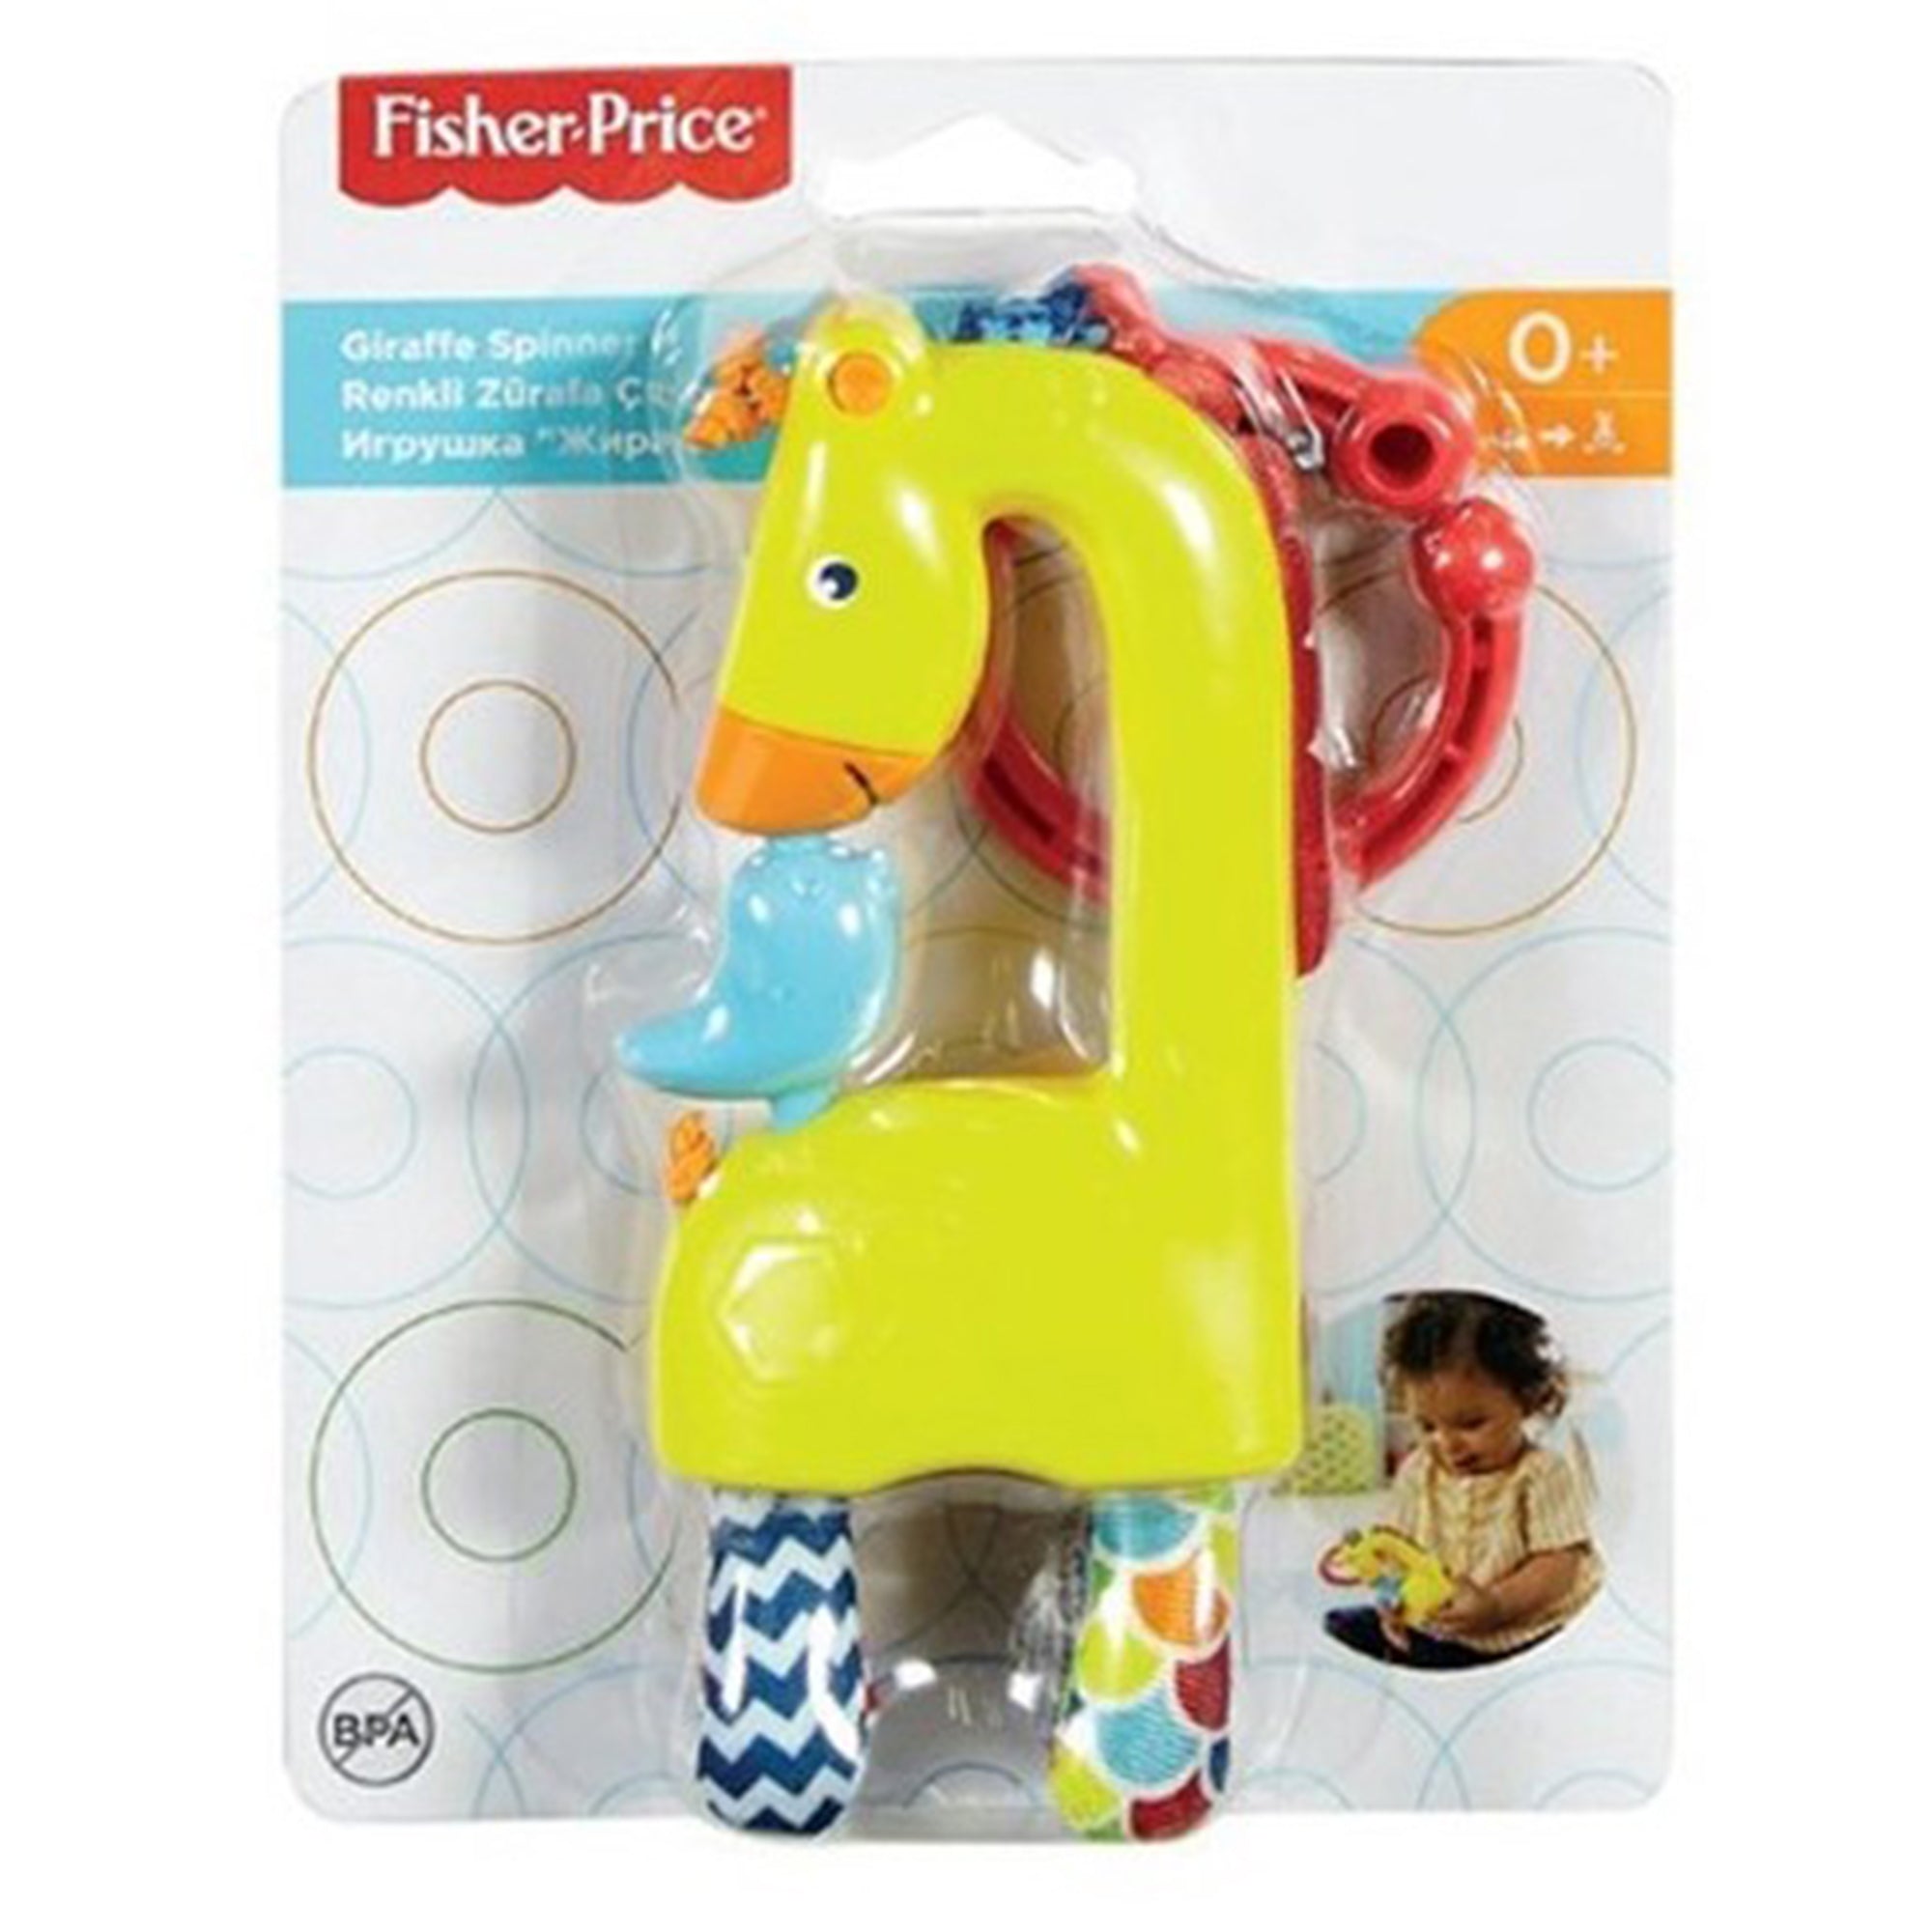 Giocattolo Fisher-Price per bambini sonaglietto giraffa gira gira 2736